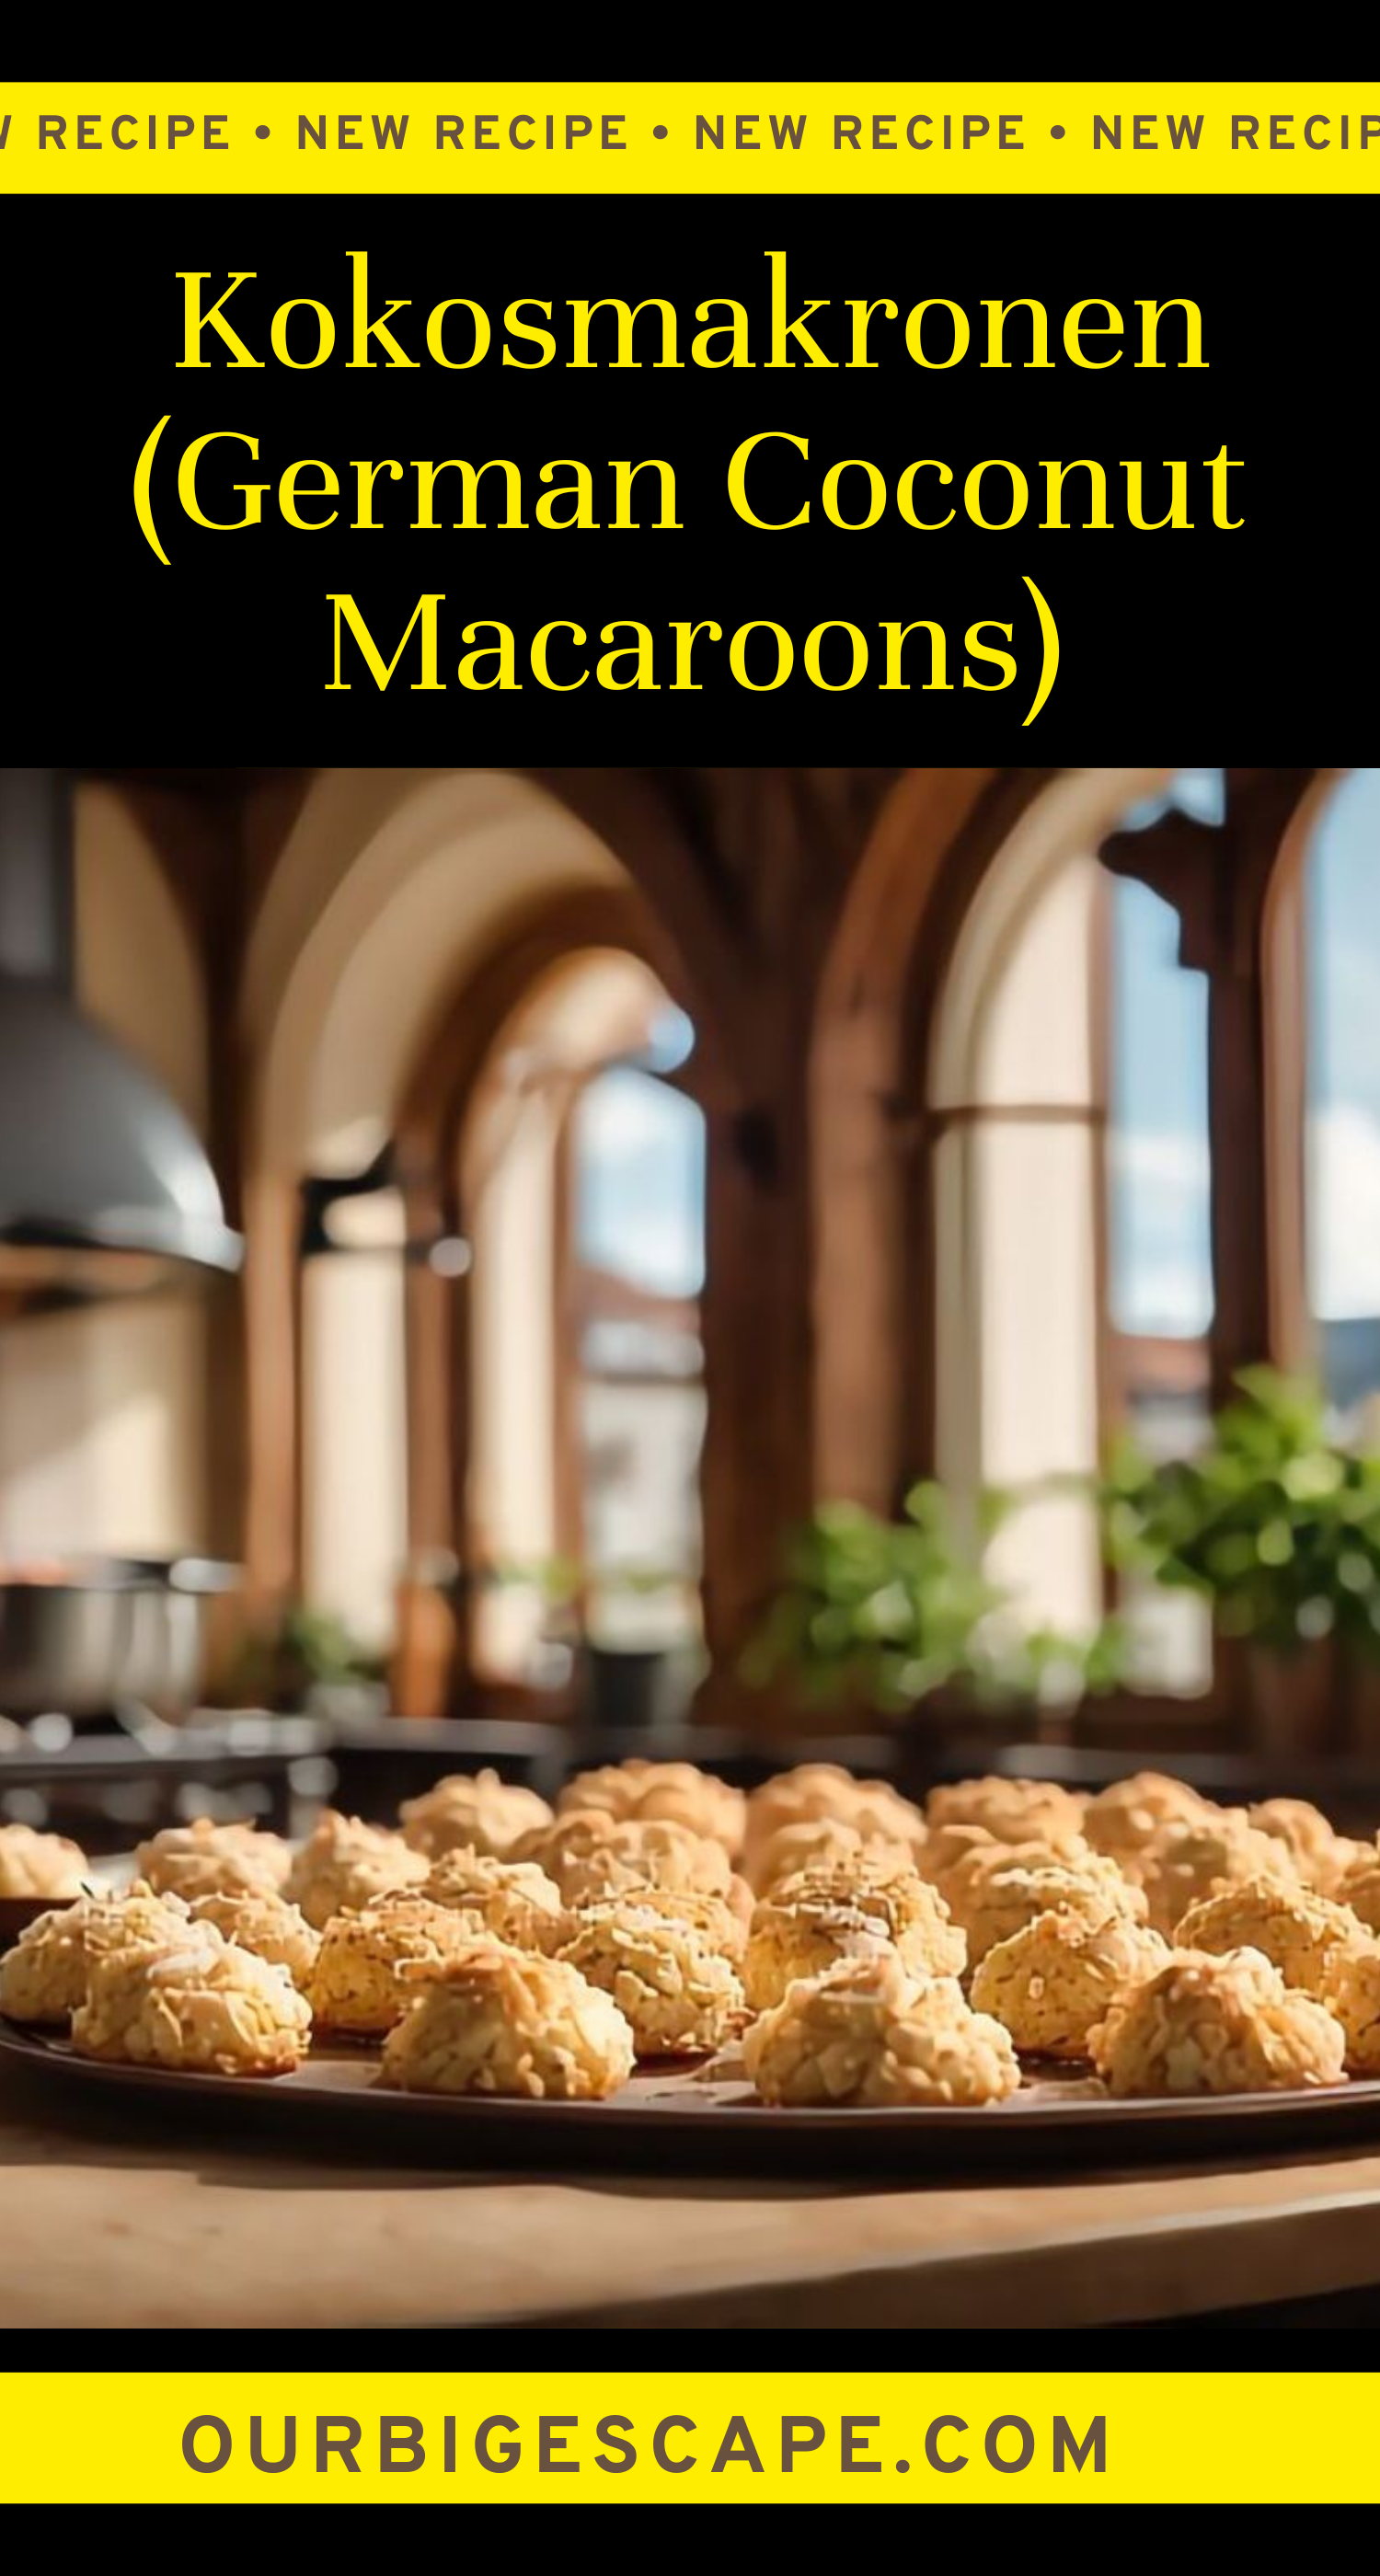 Kokosmakronen (German Coconut Macaroons)